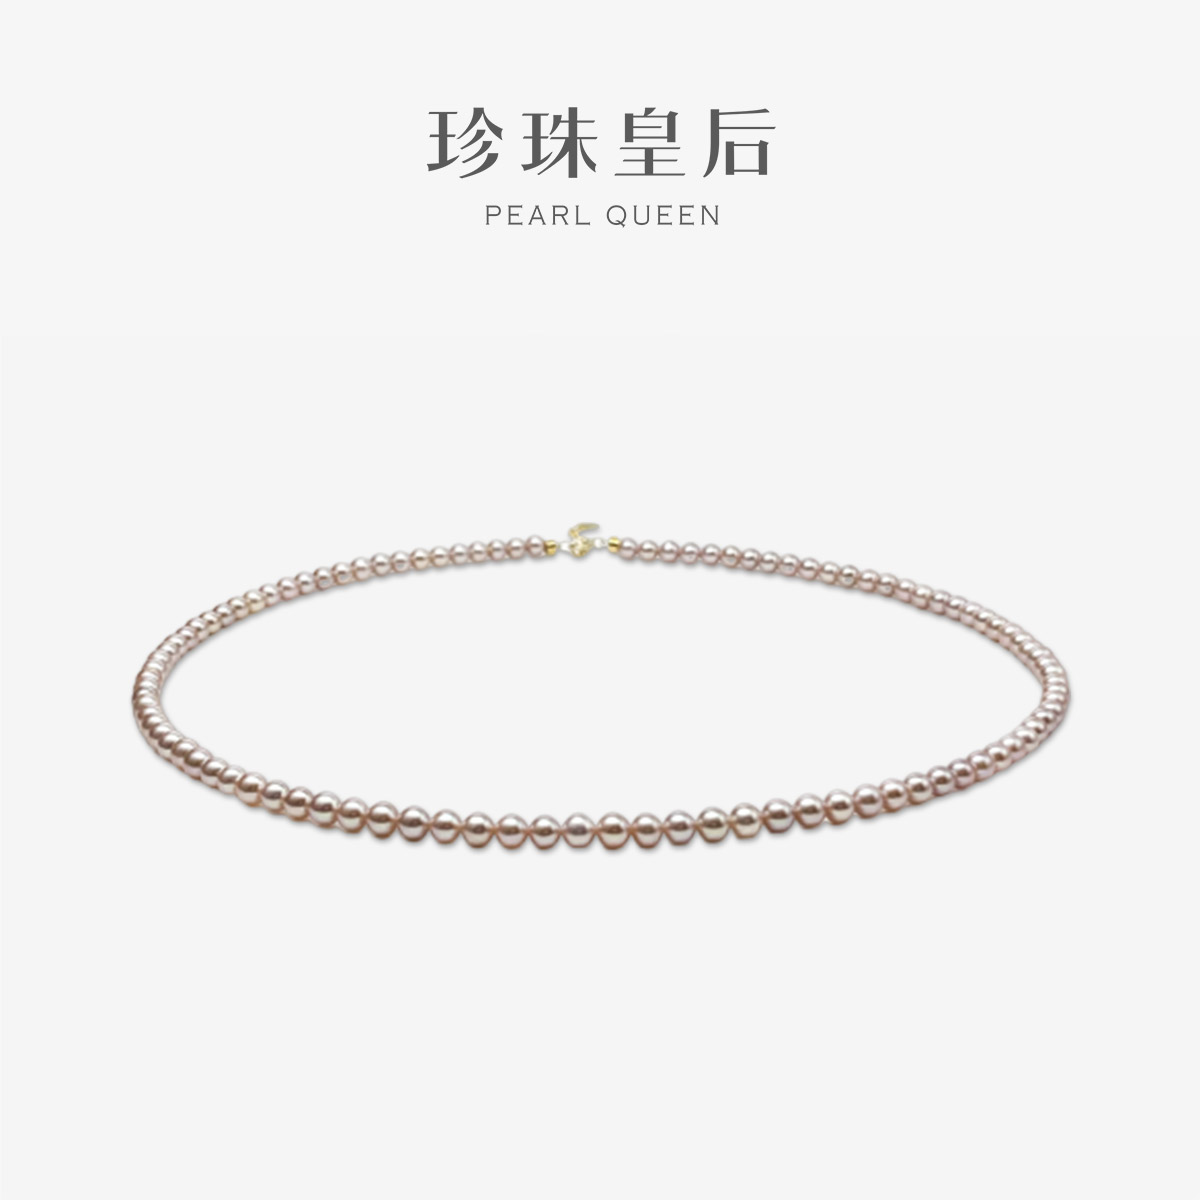 珍珠皇后 高品质小米珠链4-5mm